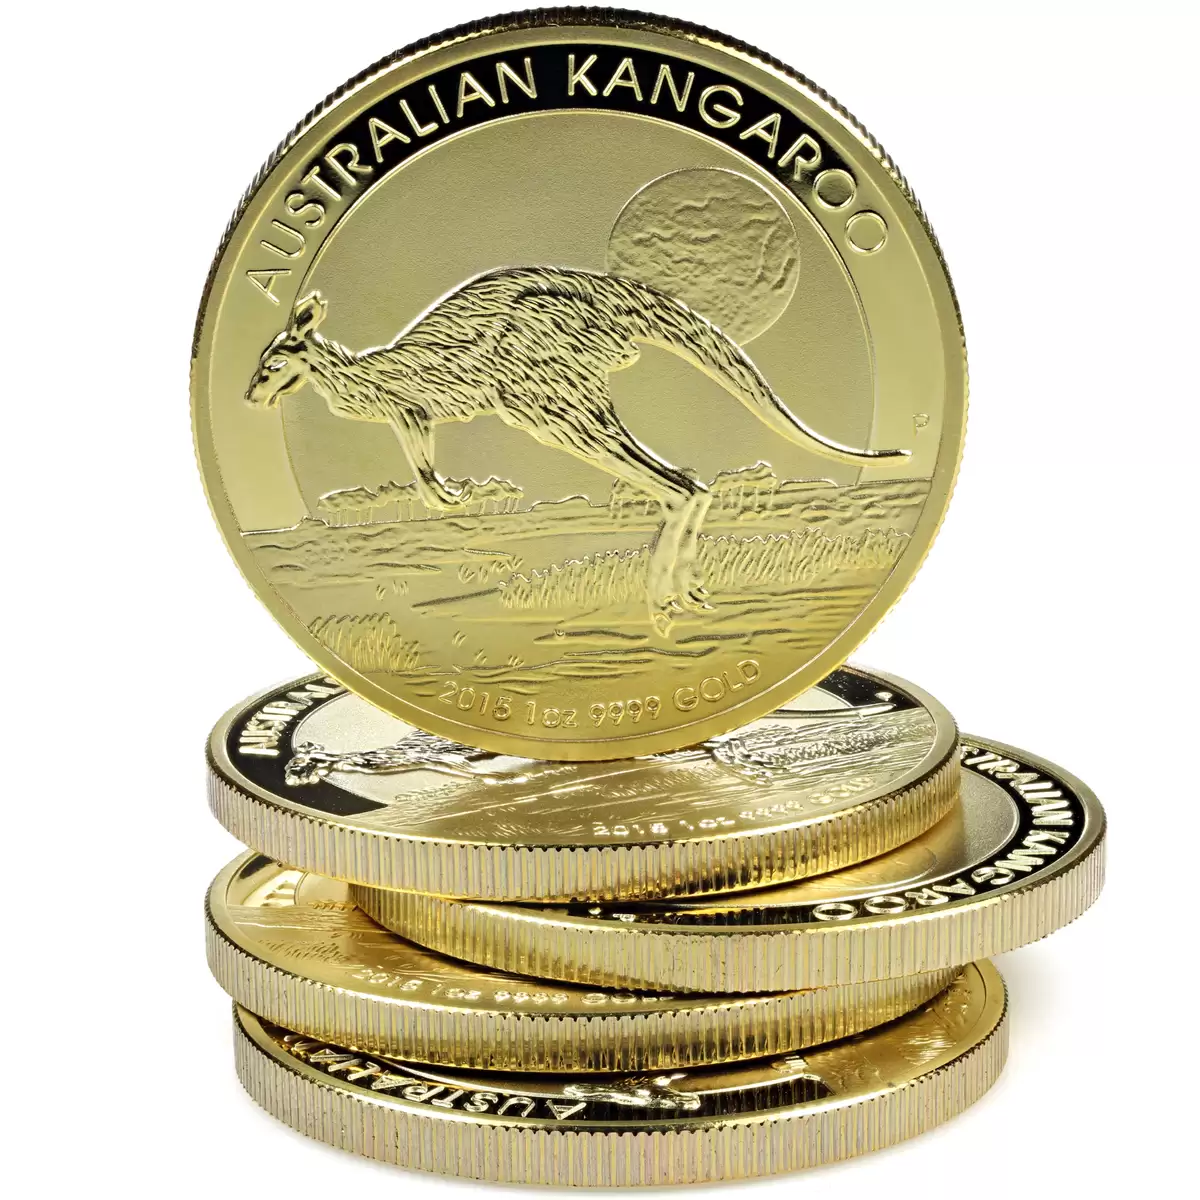  Random 1oz Perth Mint Kangaroo Goid Coin